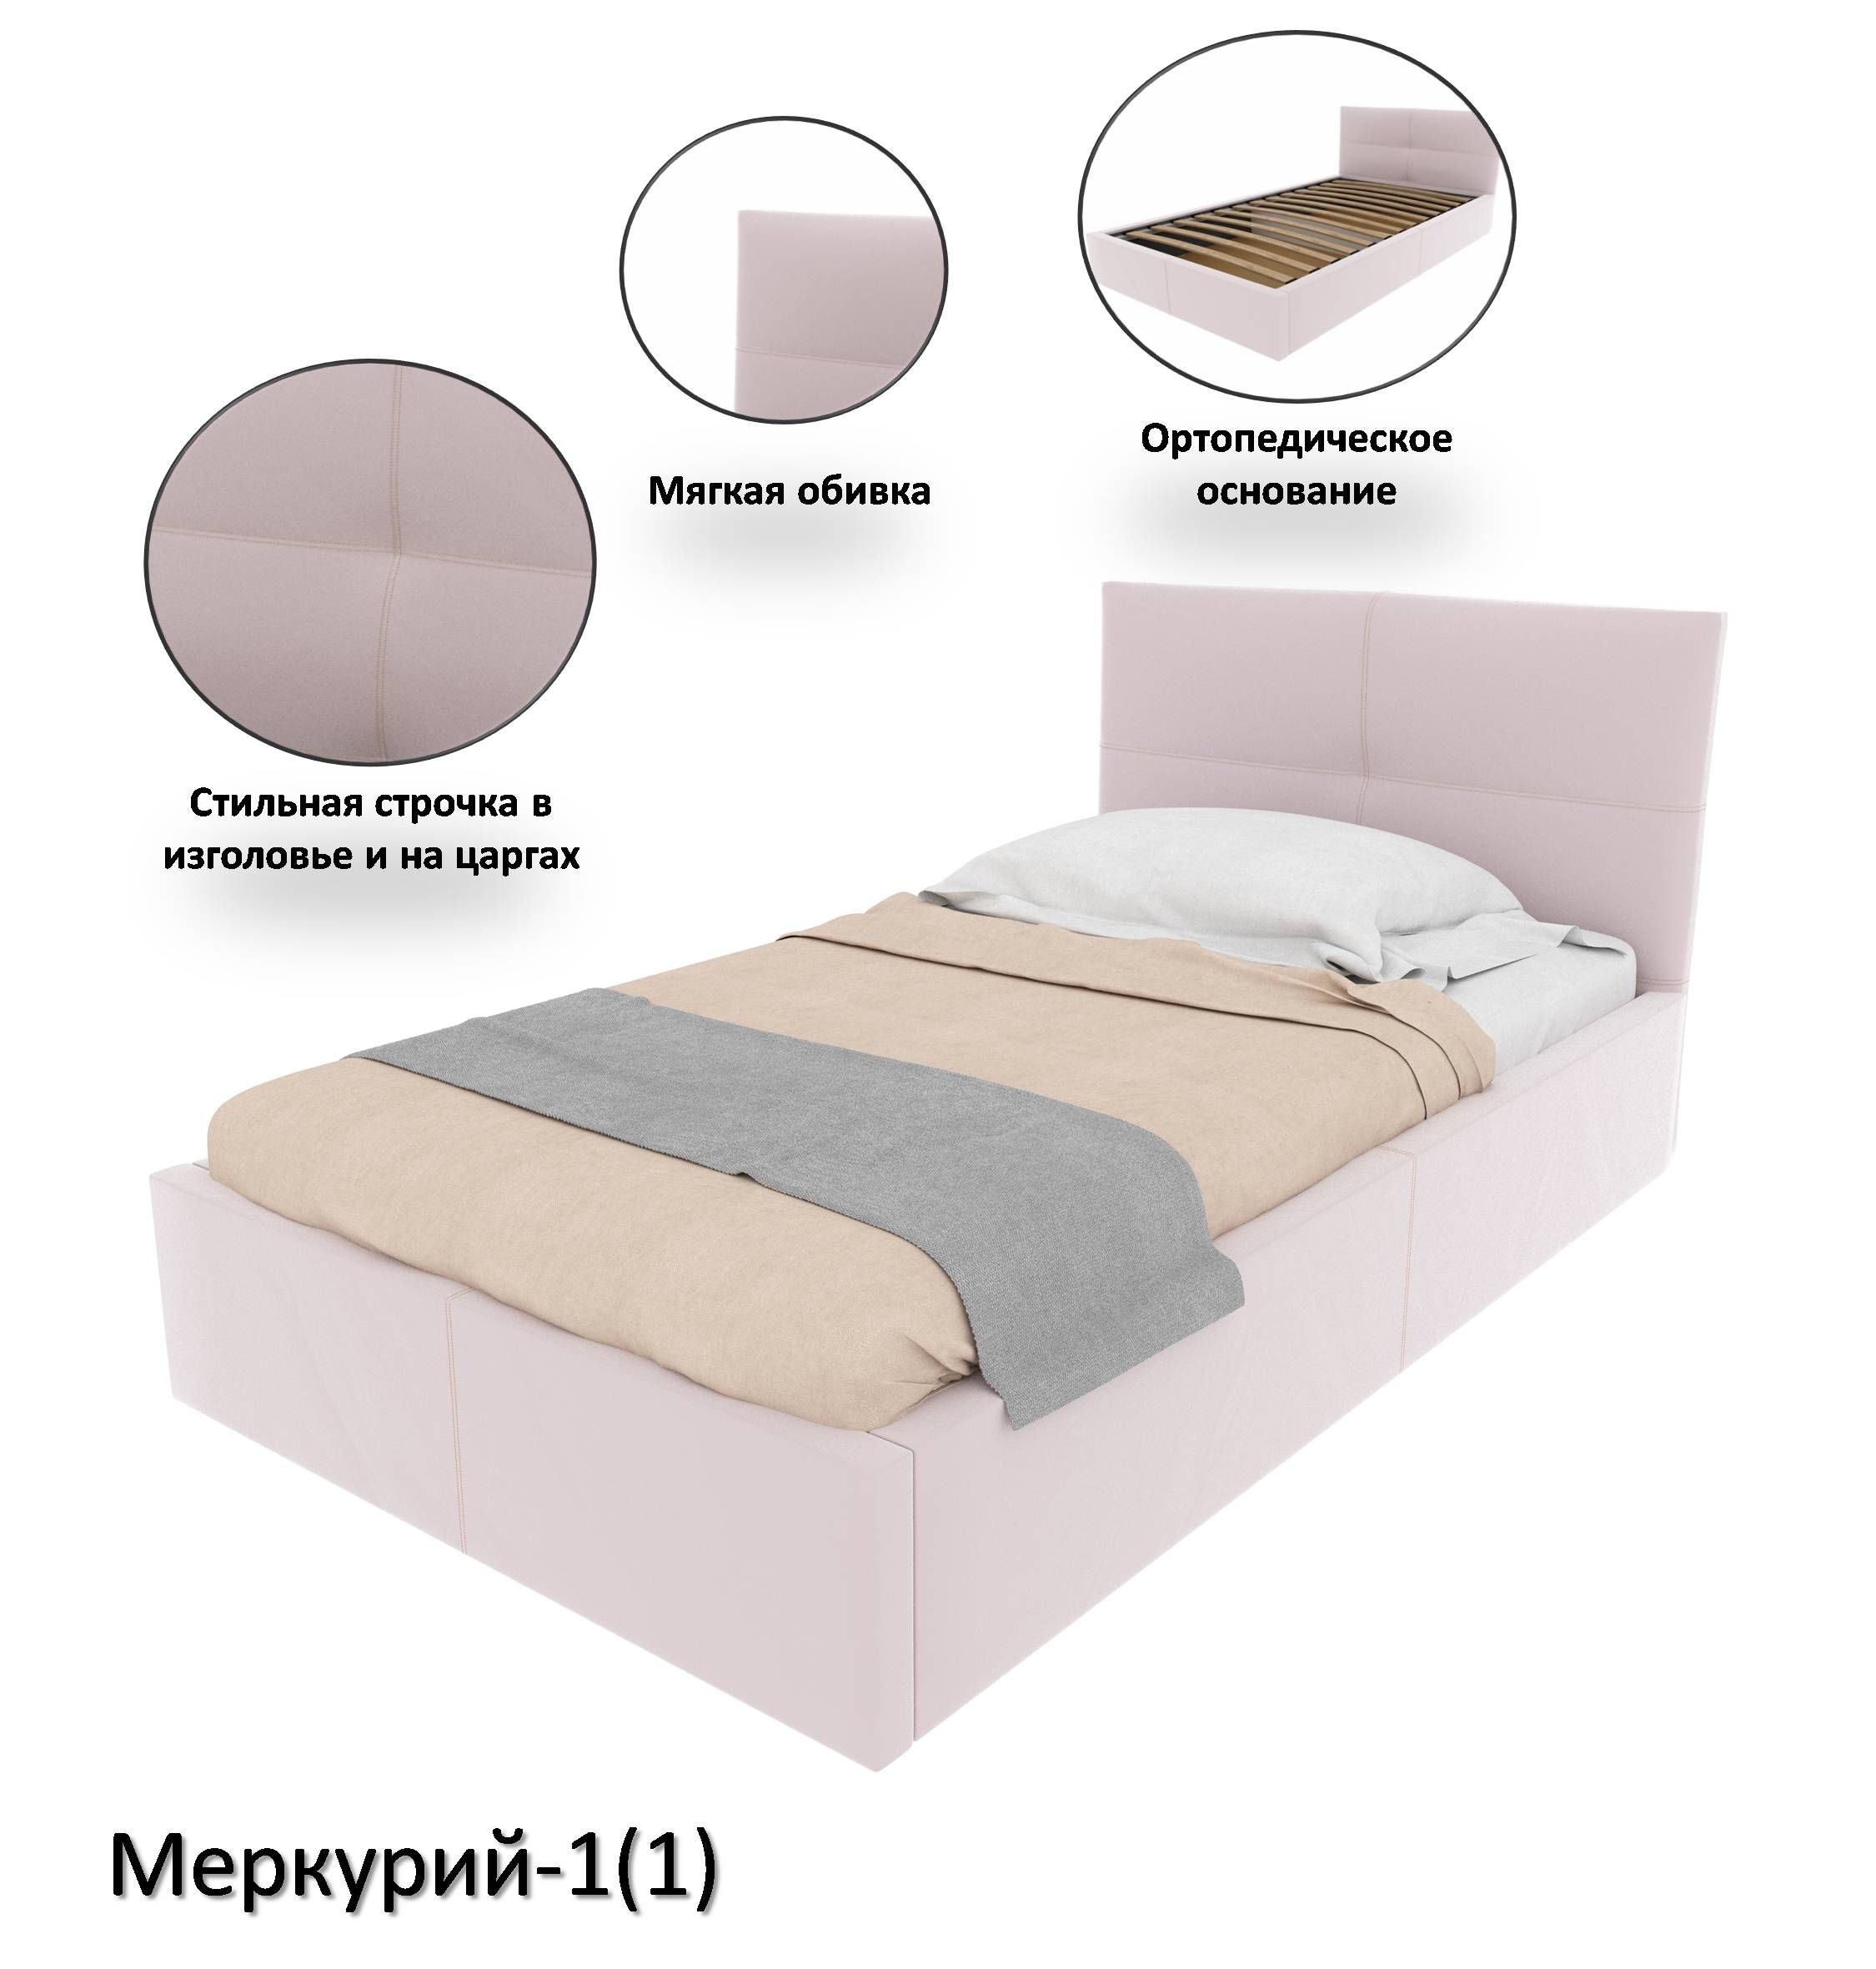 Сборка кровати Меркурий с завода Galaxy